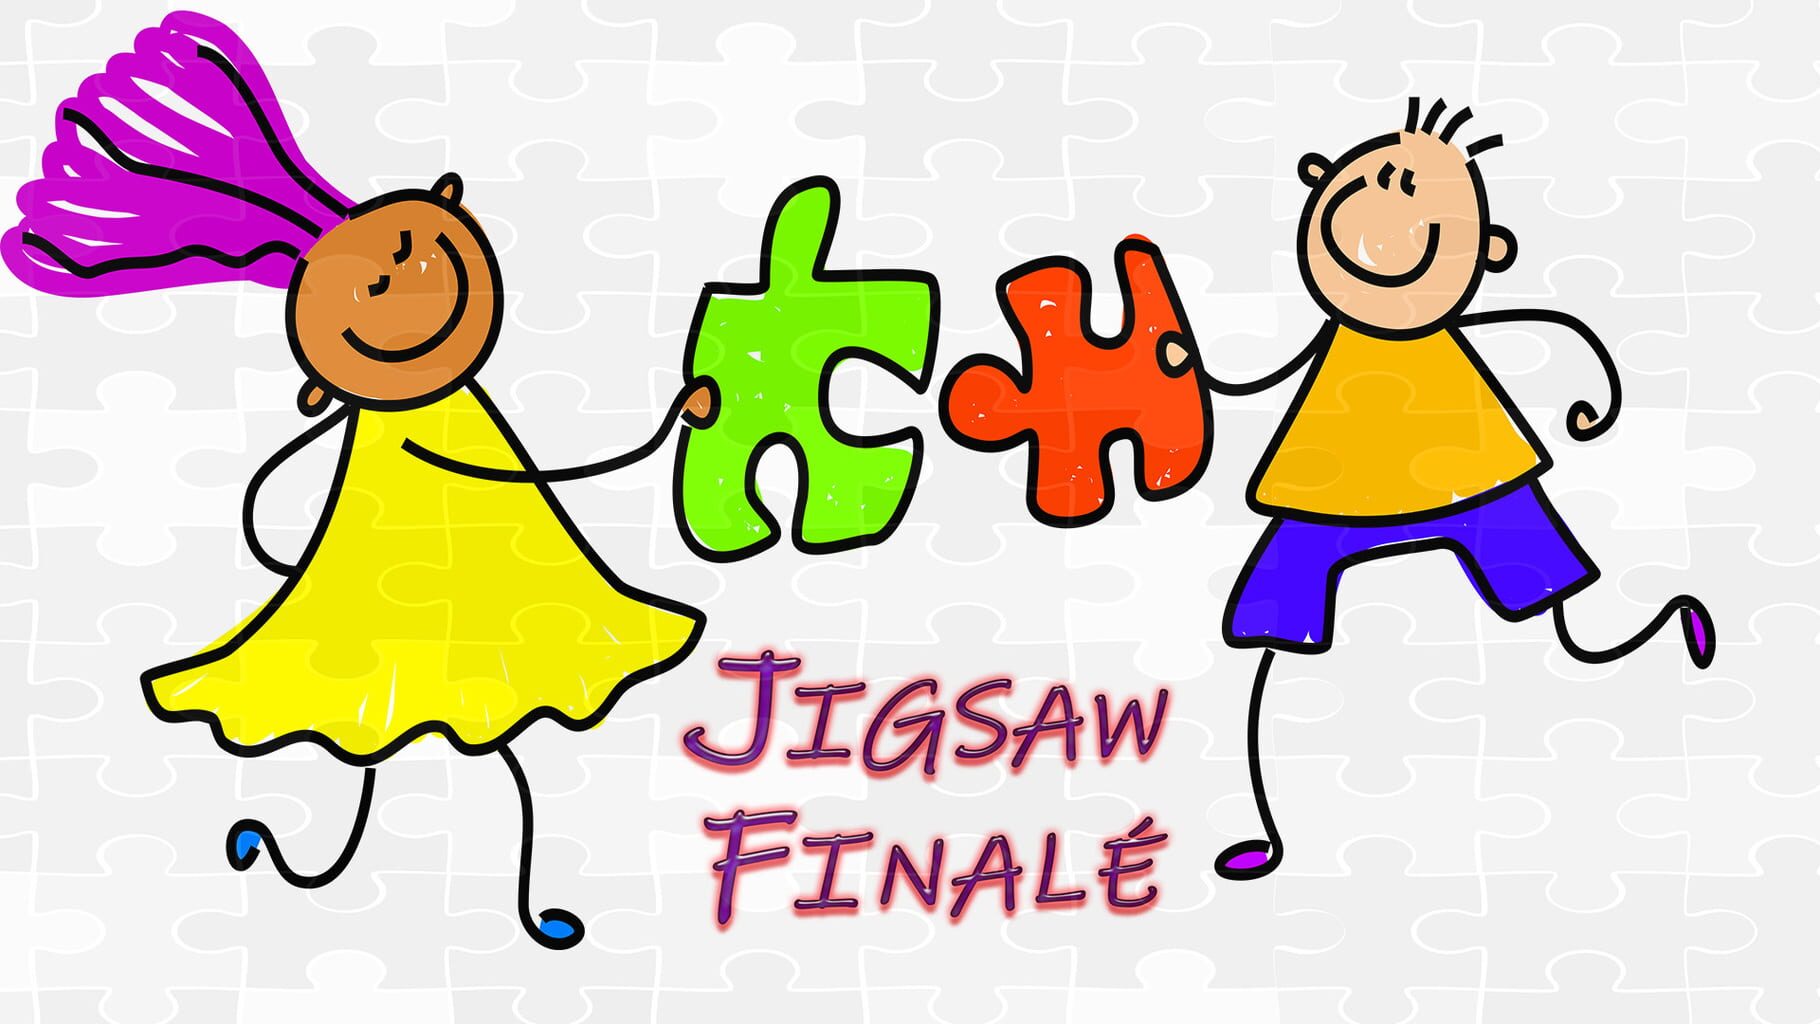 Jigsaw Finale artwork